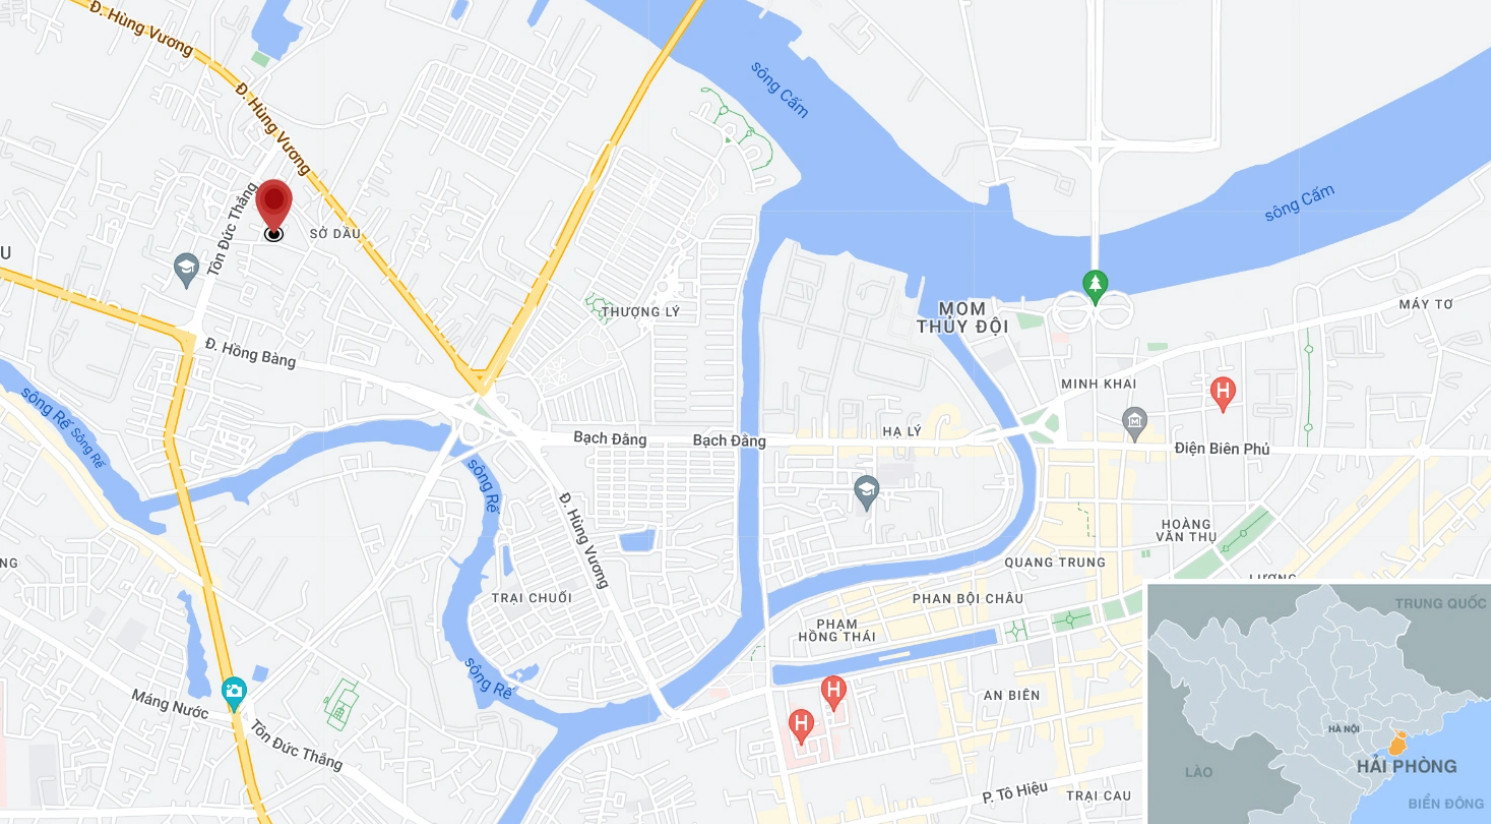 Vị trí ngôi nhà bị sập (chấm đỏ) nằm trên đường Tôn Đức Thắng. Ảnh: Google Maps.